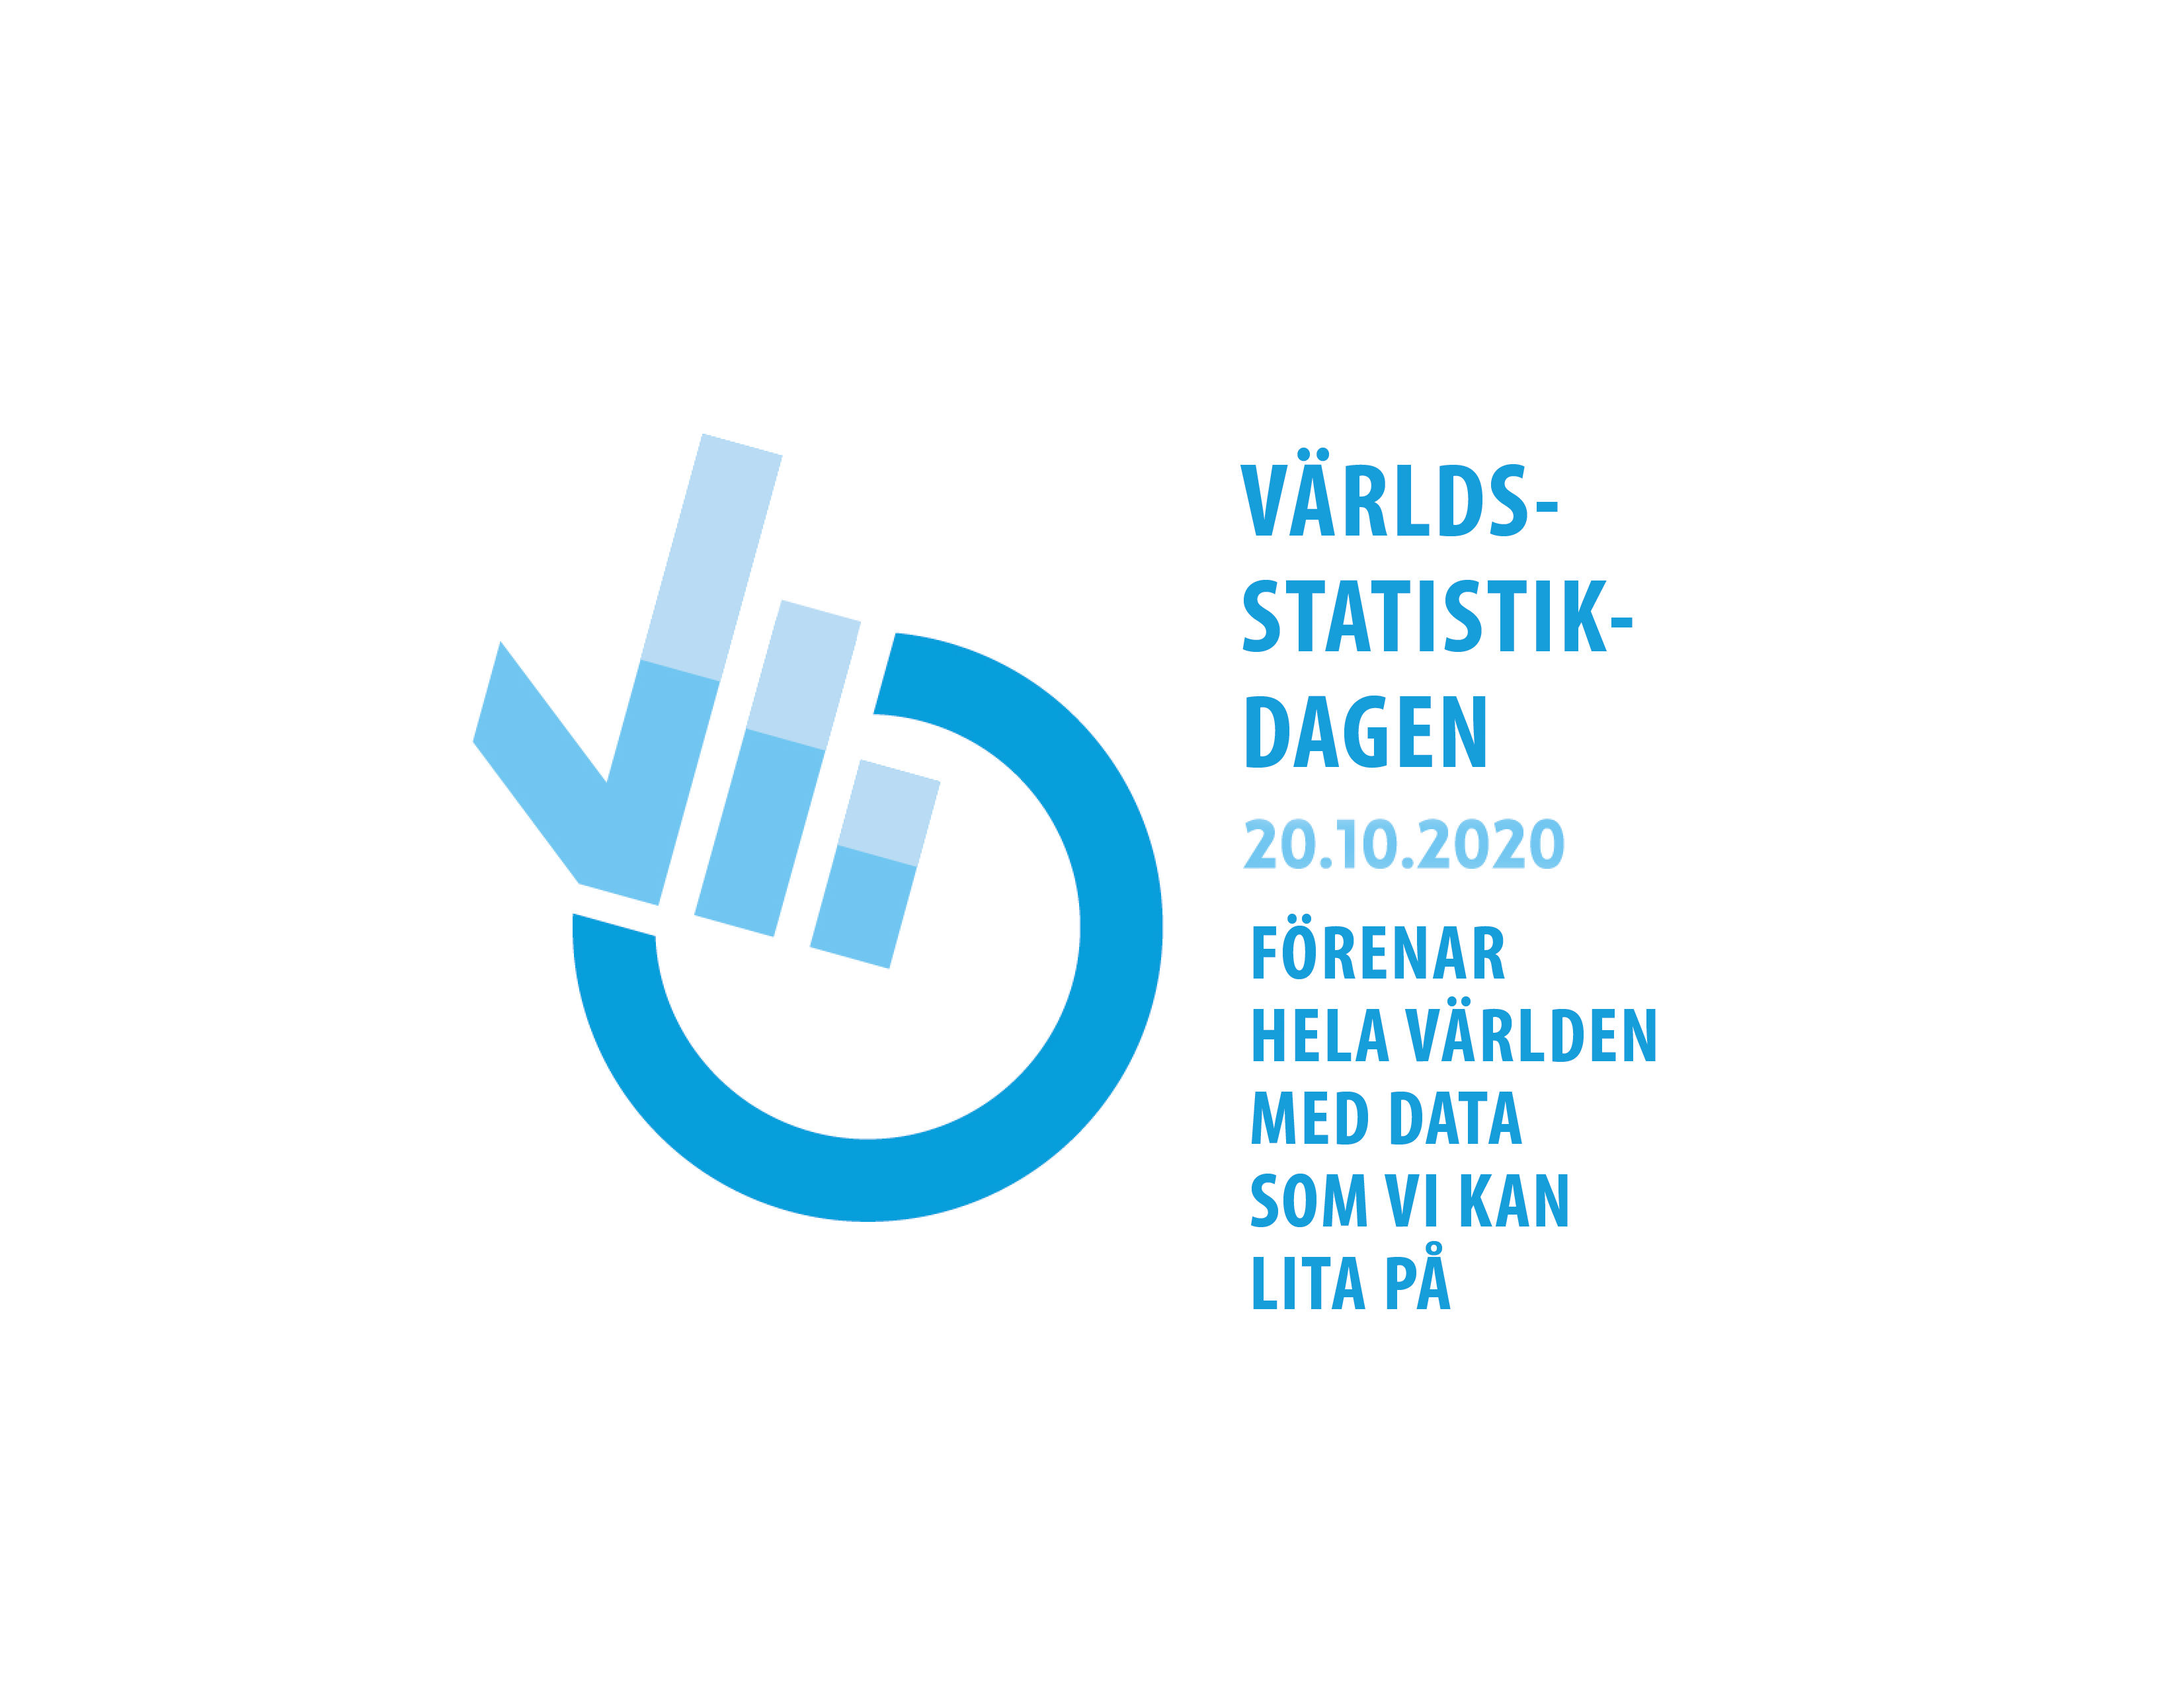 Världsstatistikdagens logo med årets tema